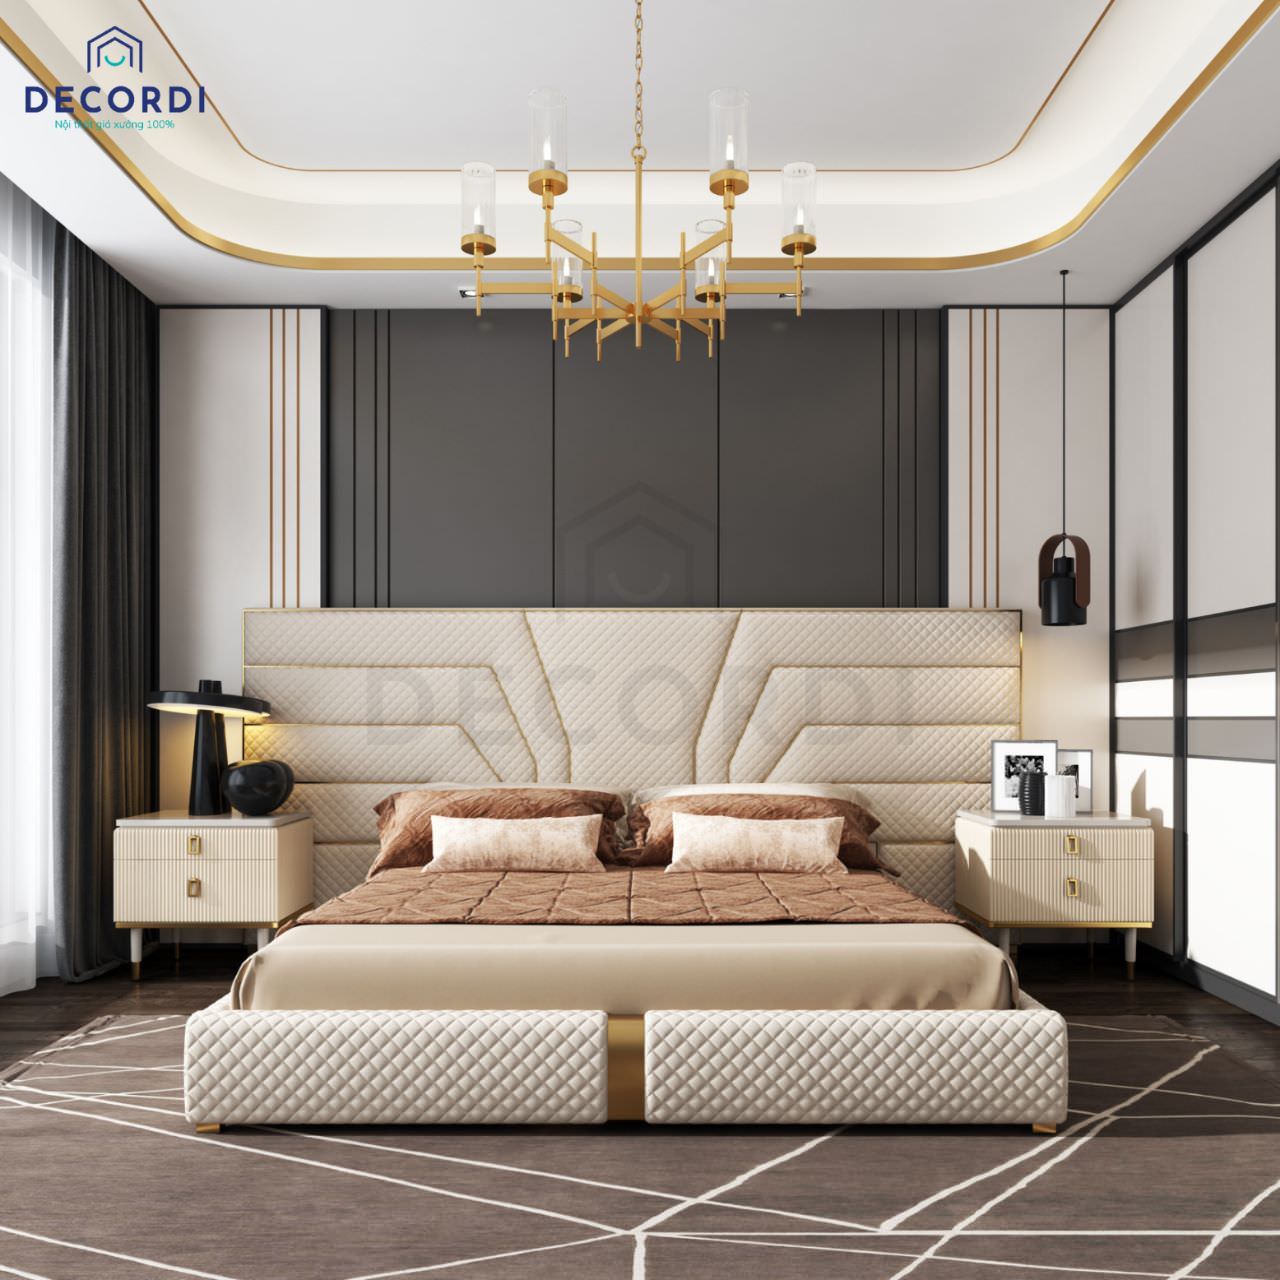 Thiết kế phòng ngủ 2 cửa ra vào phong cách luxury nhưng không cầu kỳ phức tạp, nổi bật với vách ốp có đường chỉ vàng đẹp mắt